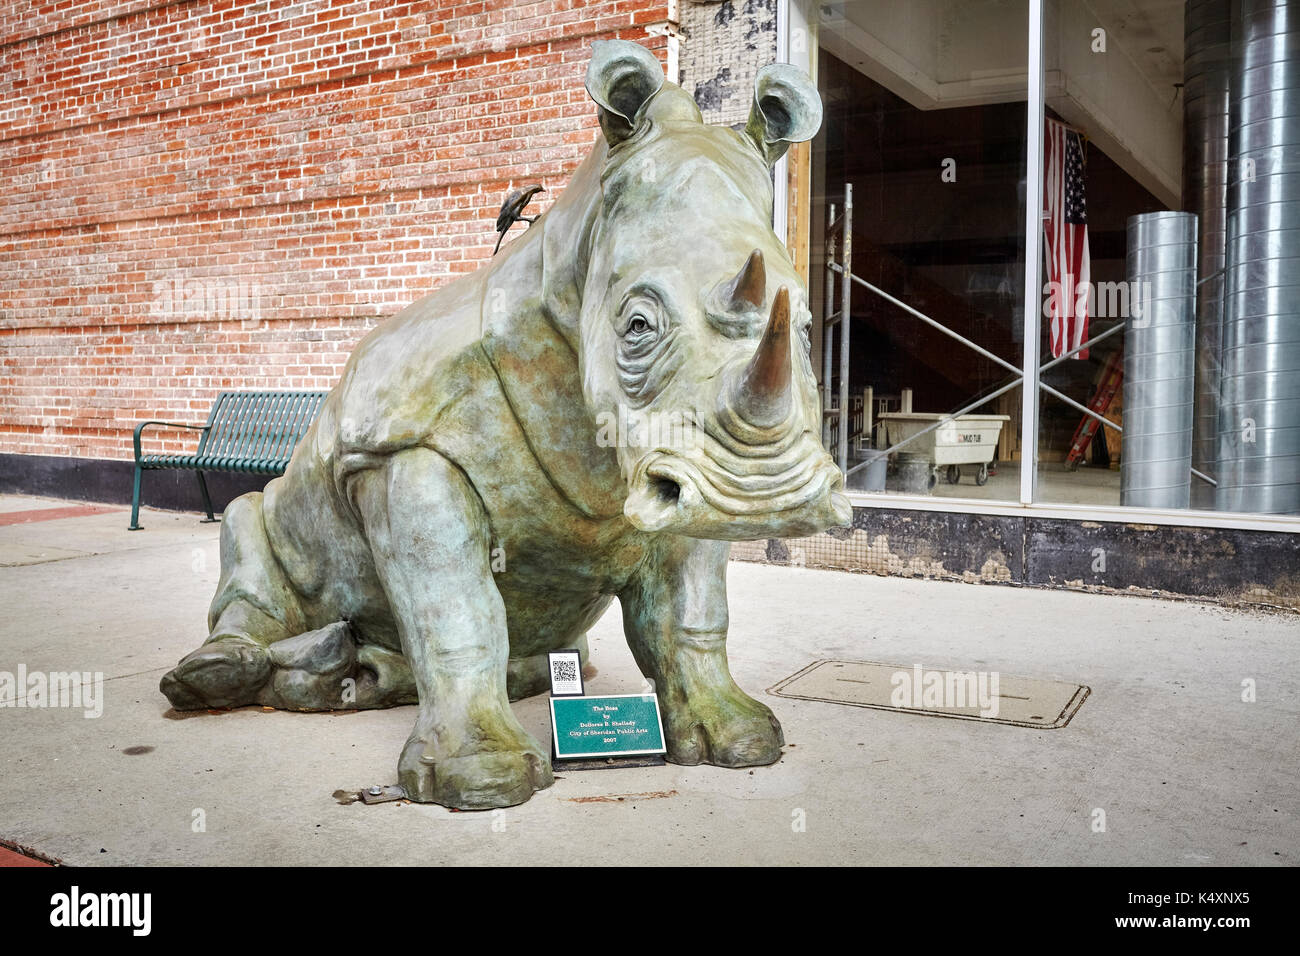 Sheridan, USA - 30 octobre 2016 : Bronze rhino sur un trottoir. Cette sculpture a appelé le patron a été créé par B. Dollores Shelledy. Banque D'Images